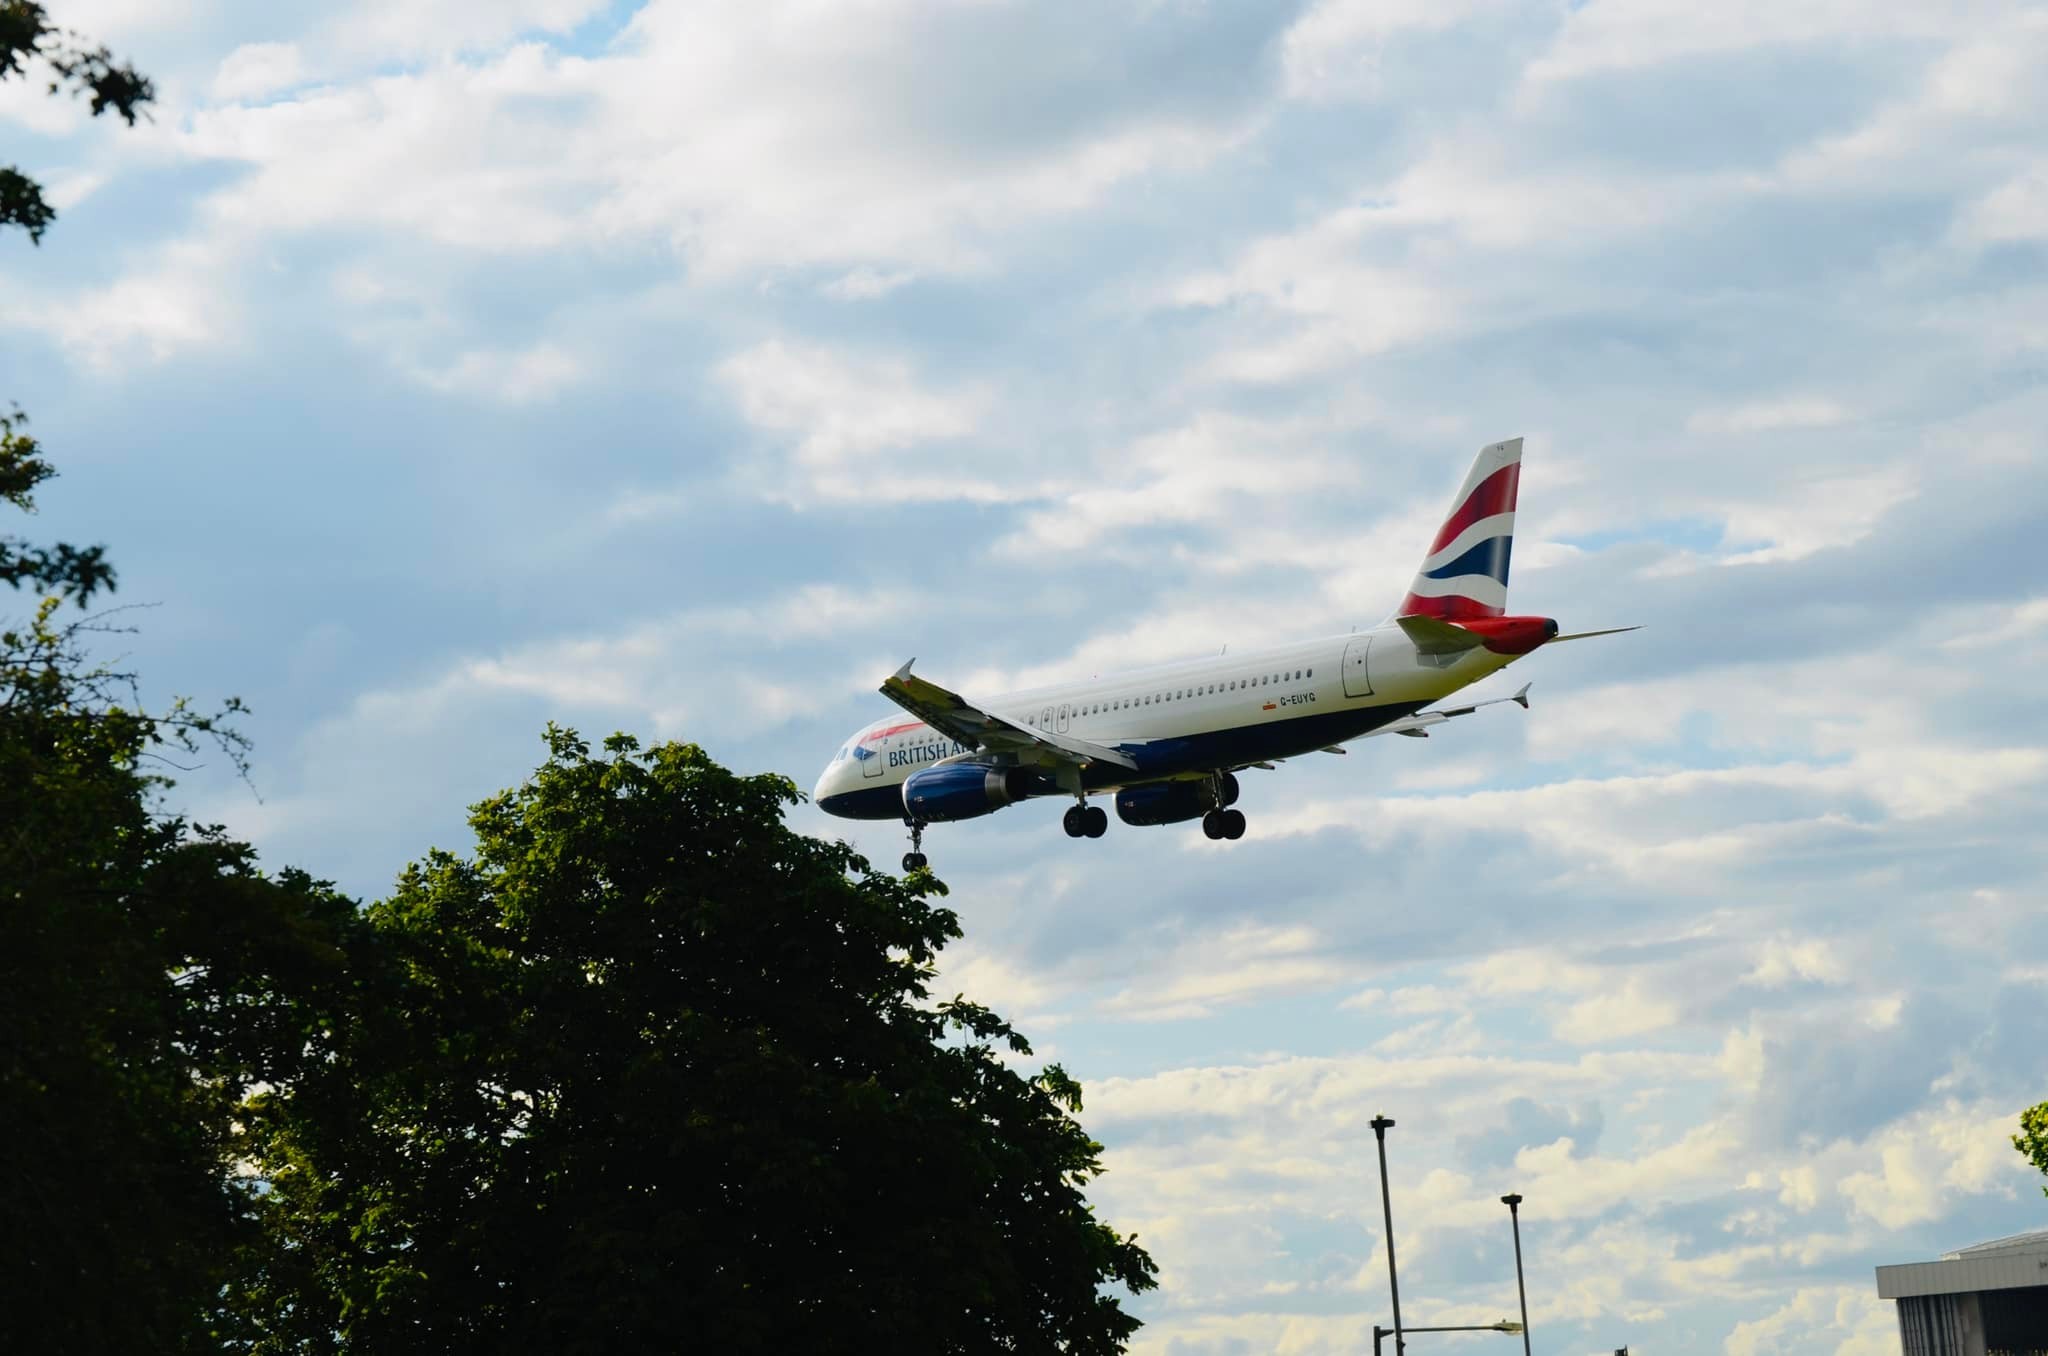 A British Airways flight landing back home